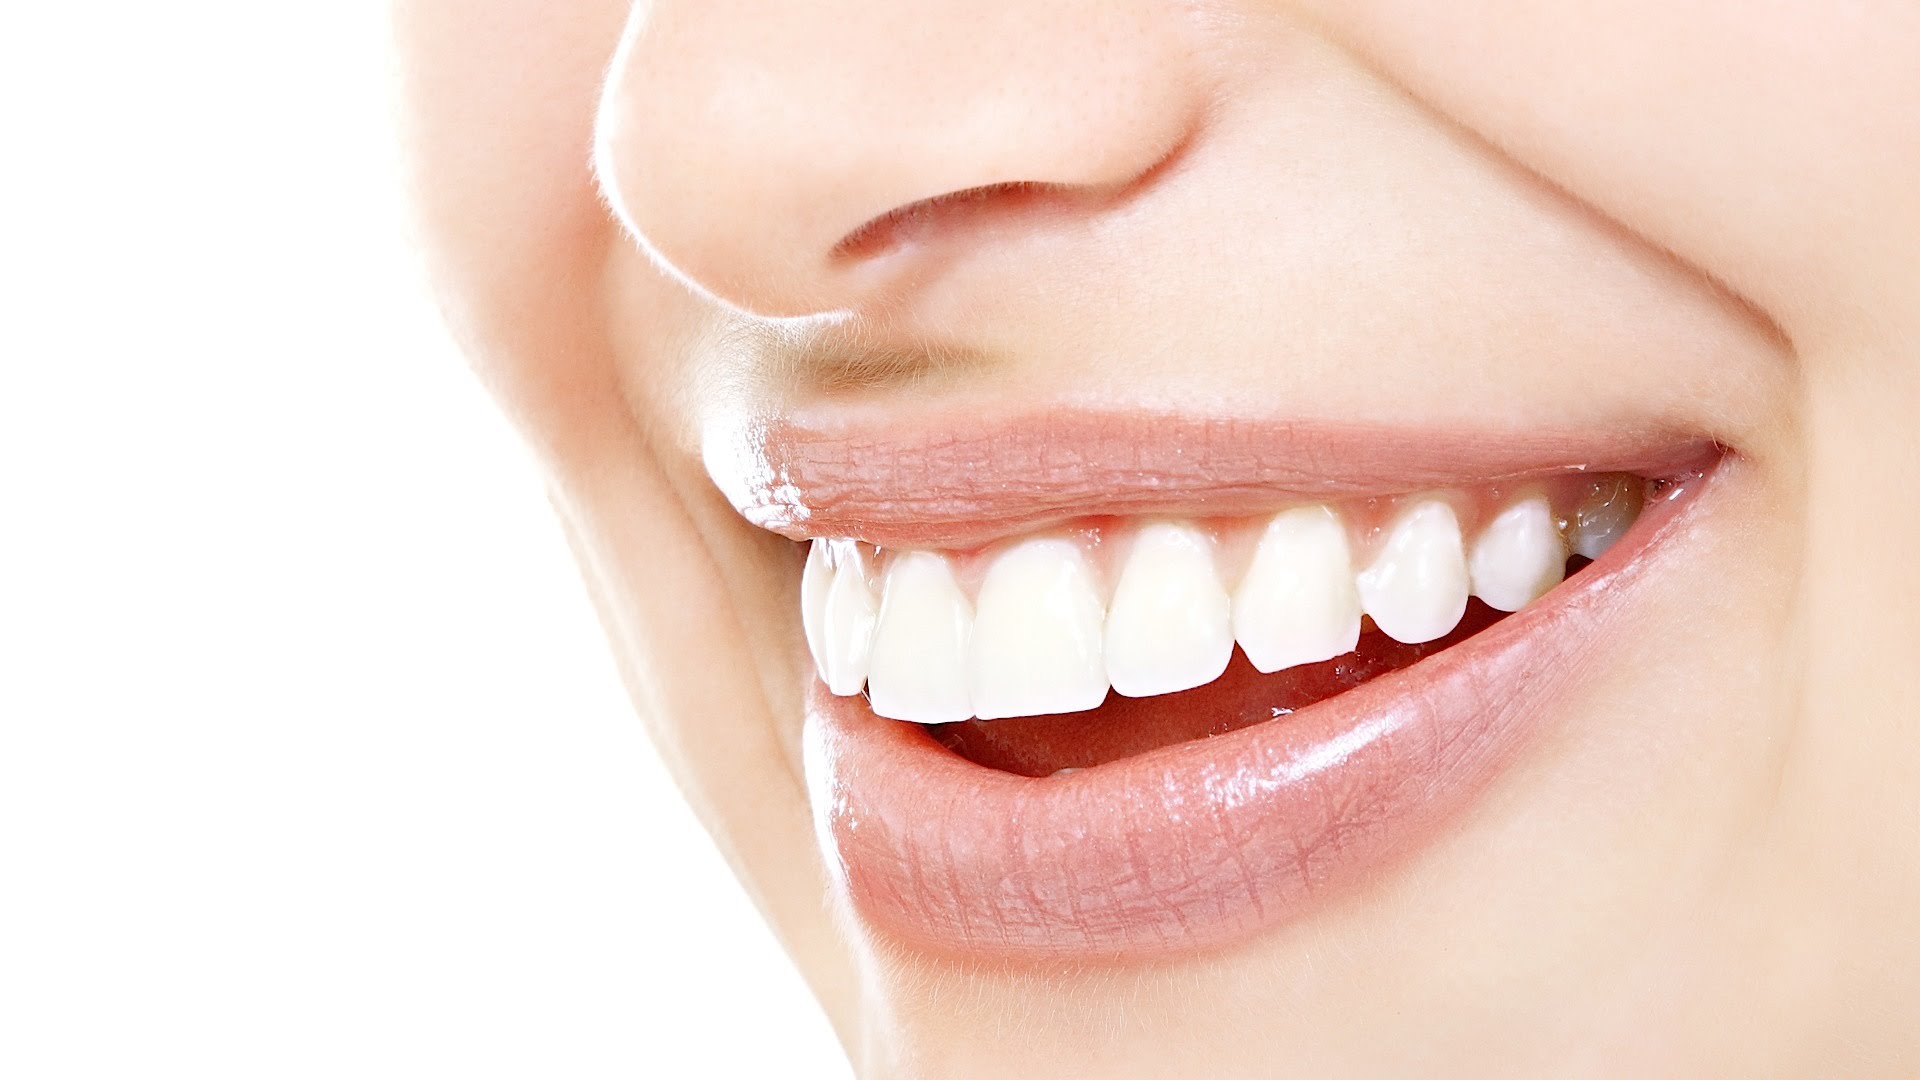 المعهد الذهبي|الأسنان، كيف نسكن آلامها ونحافظ على نظافتها وصحتهاالأسنان، كيف نسكن آلامها ونحافظ على نظافتها وصحتها